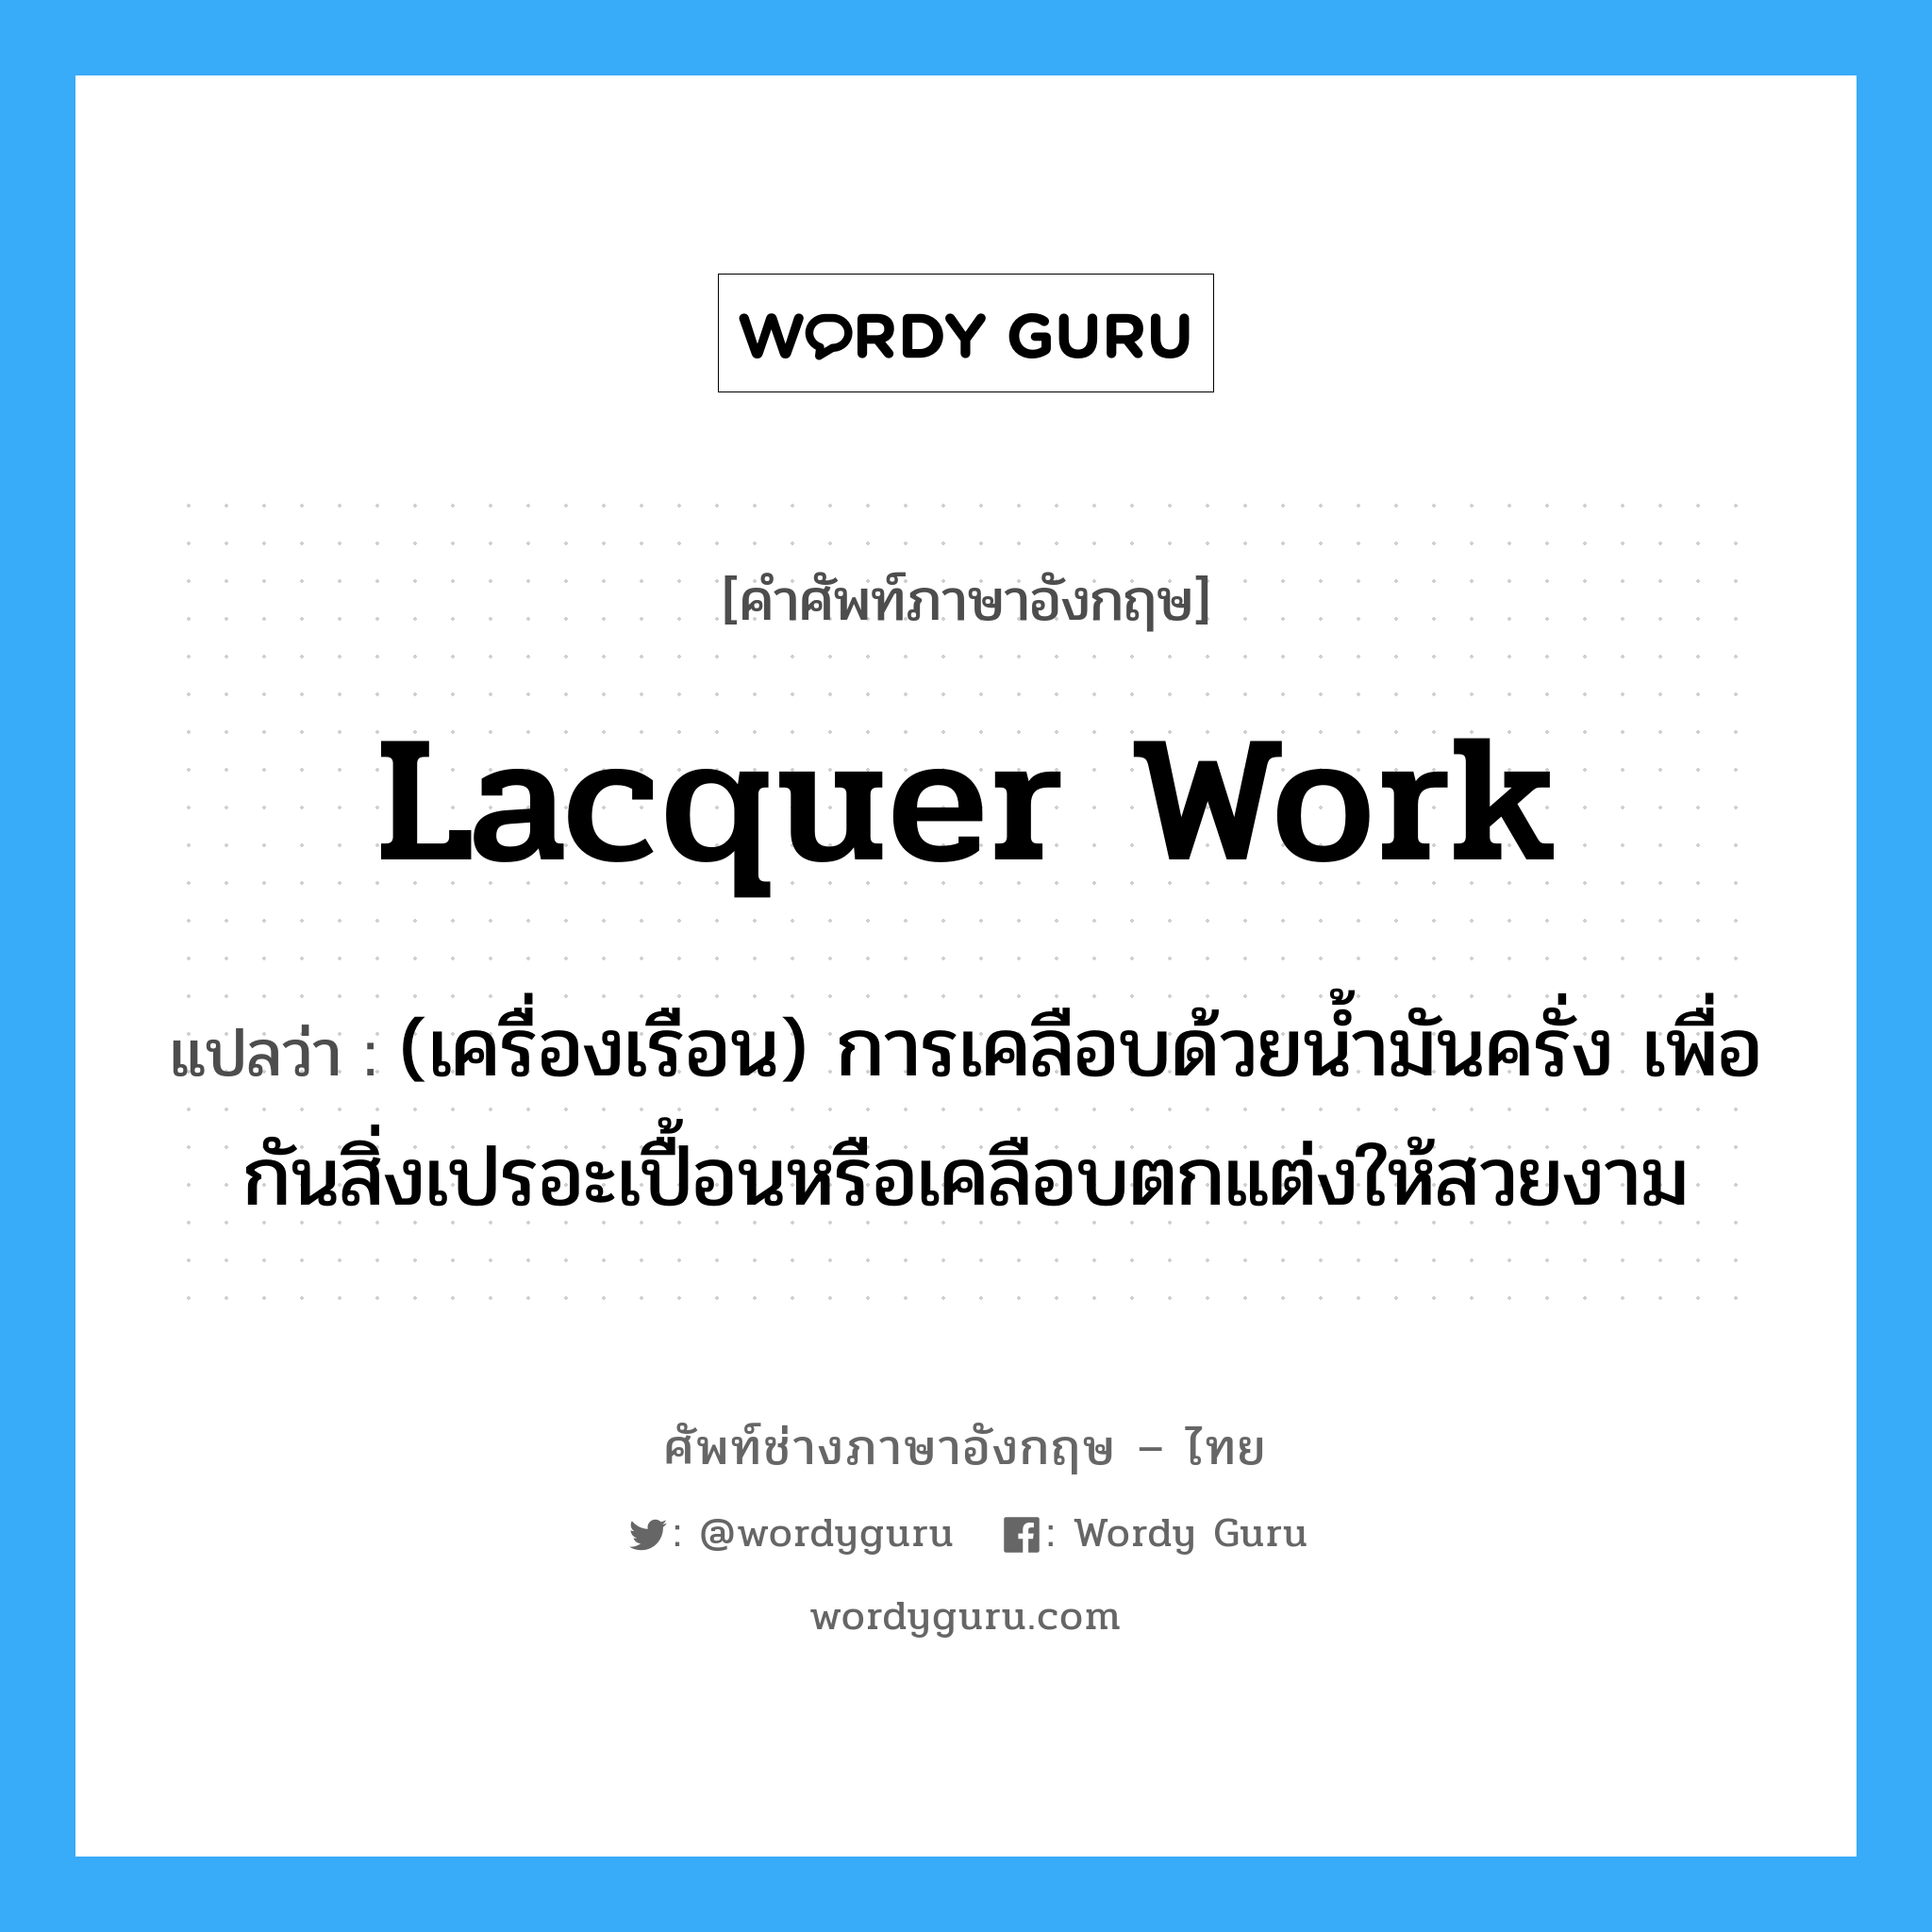 lacquer work แปลว่า?, คำศัพท์ช่างภาษาอังกฤษ - ไทย lacquer work คำศัพท์ภาษาอังกฤษ lacquer work แปลว่า (เครื่องเรือน) การเคลือบด้วยน้ำมันครั่ง เพื่อกันสิ่งเปรอะเปื้อนหรือเคลือบตกแต่งให้สวยงาม